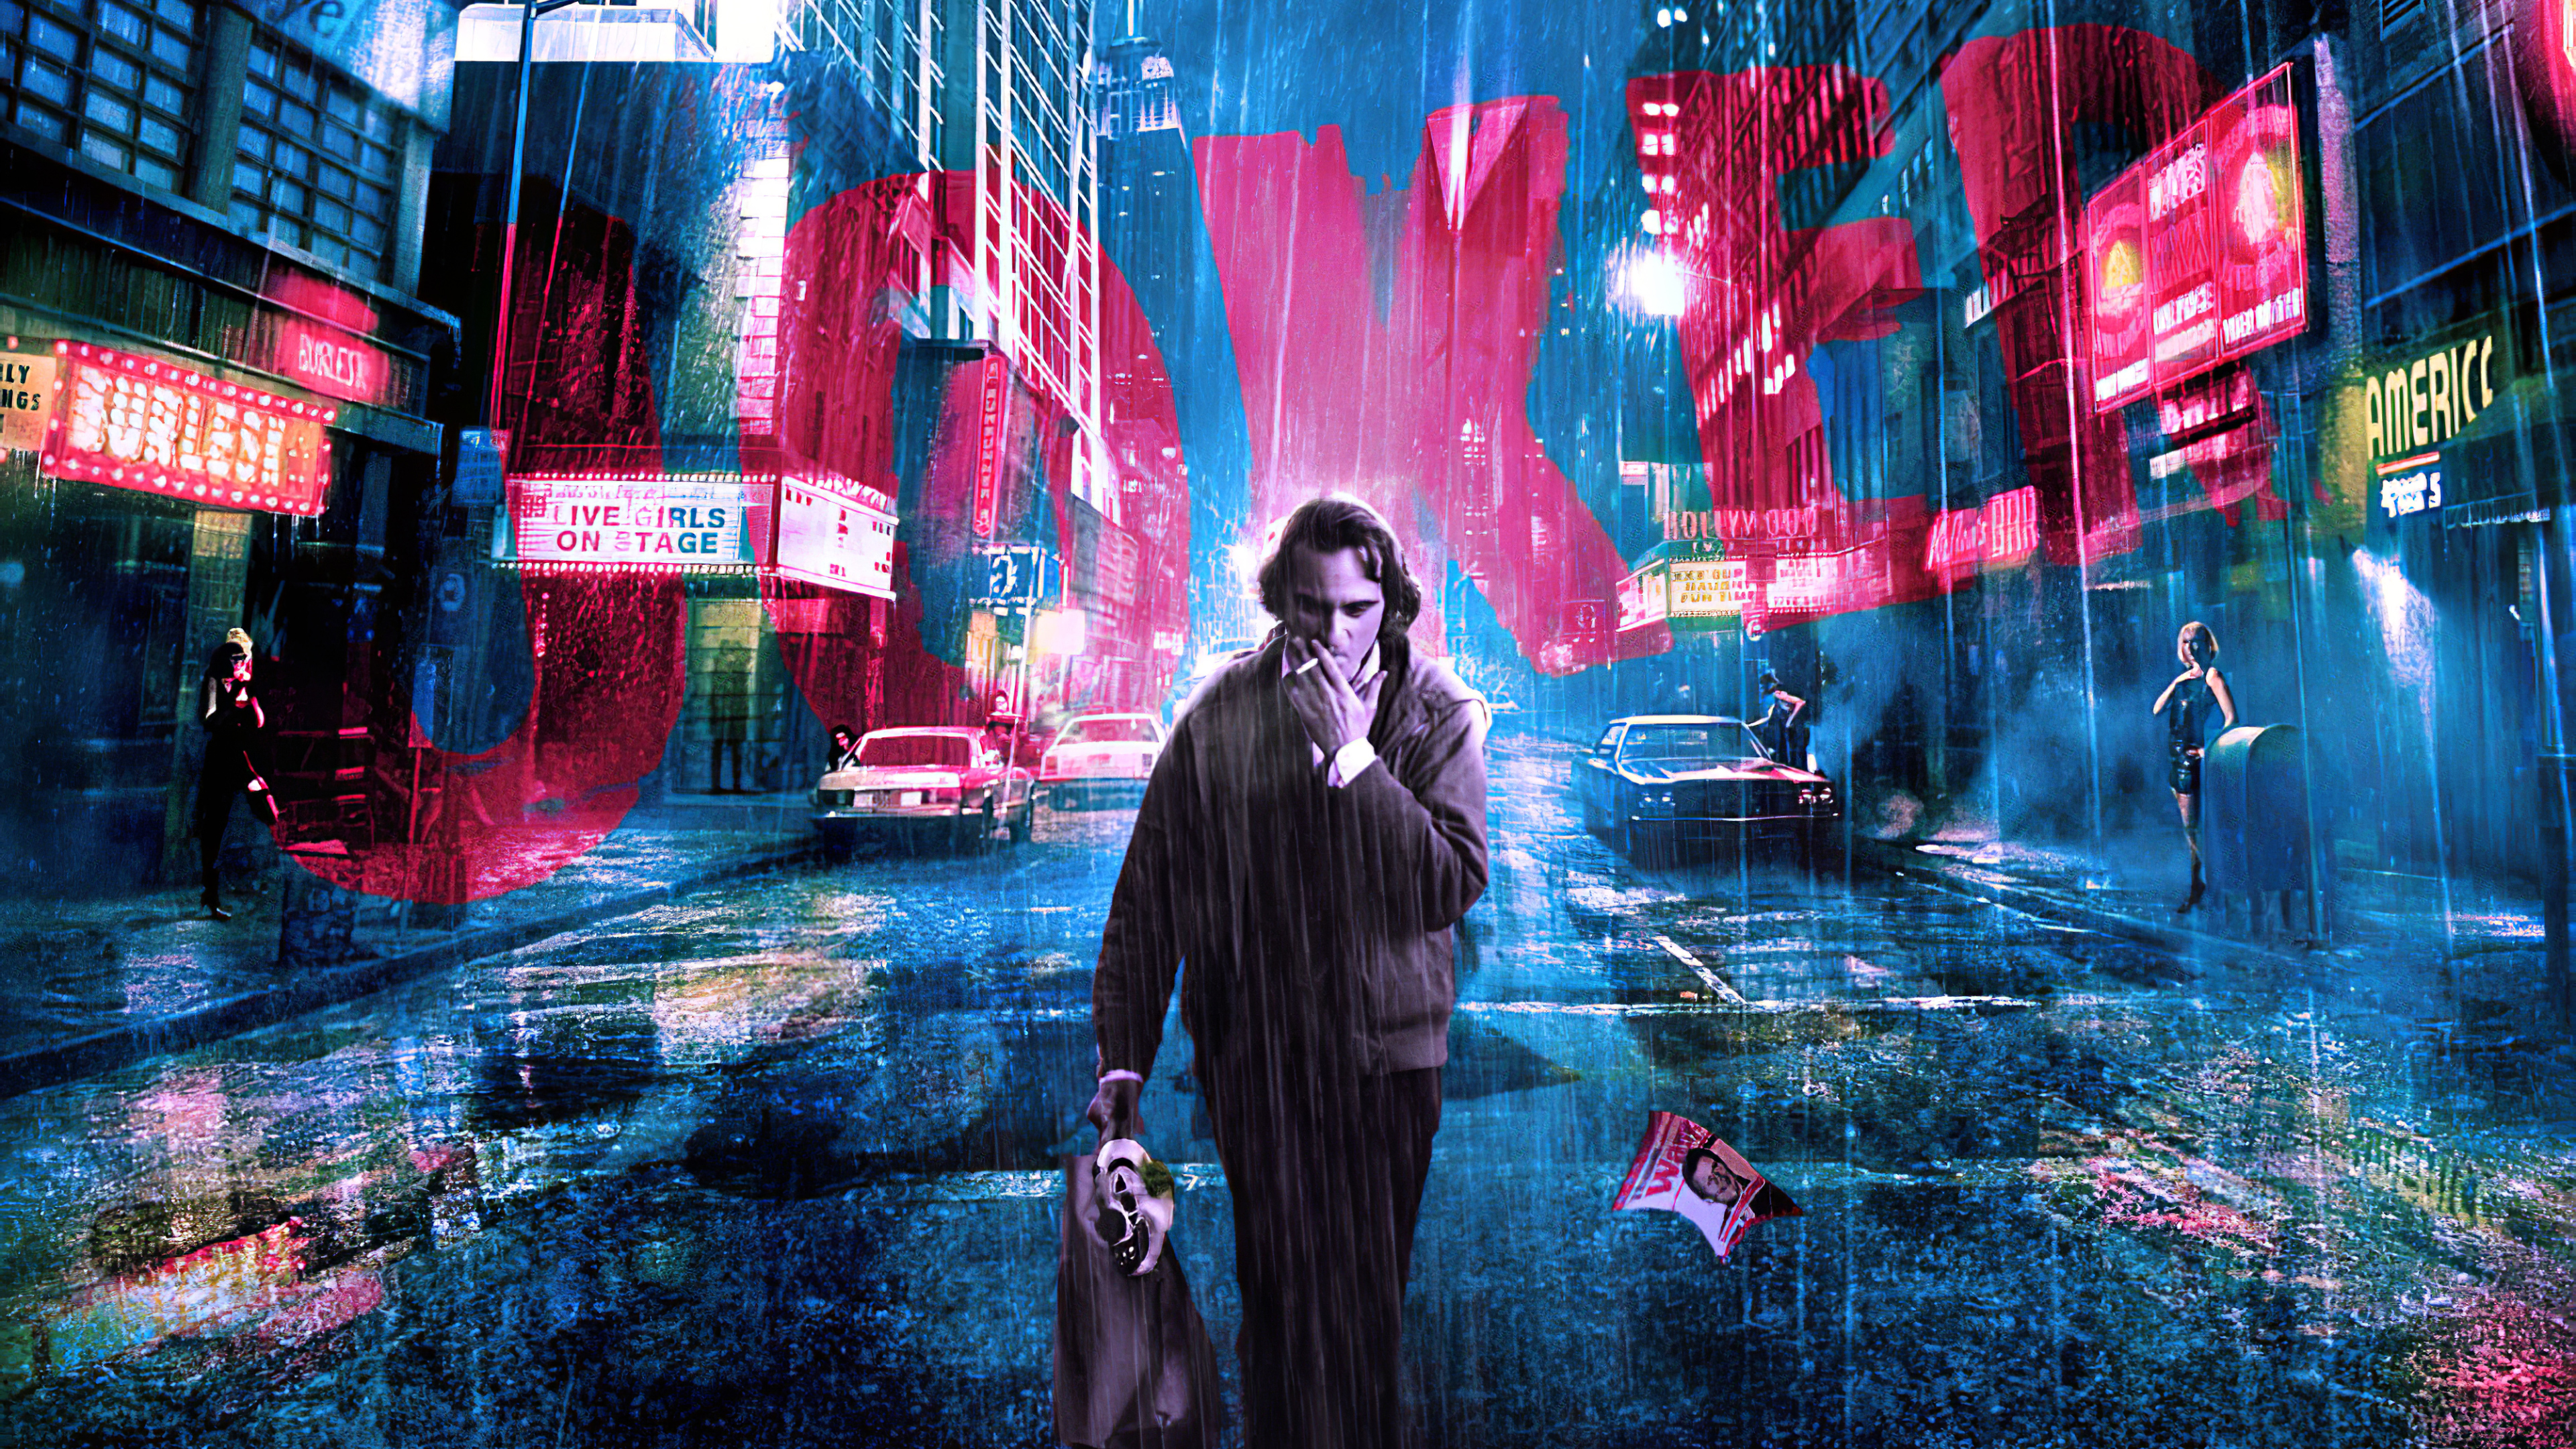 Joaquin Phoenix as Joker in the city Wallpaper 4k Ultra HD ID:5333